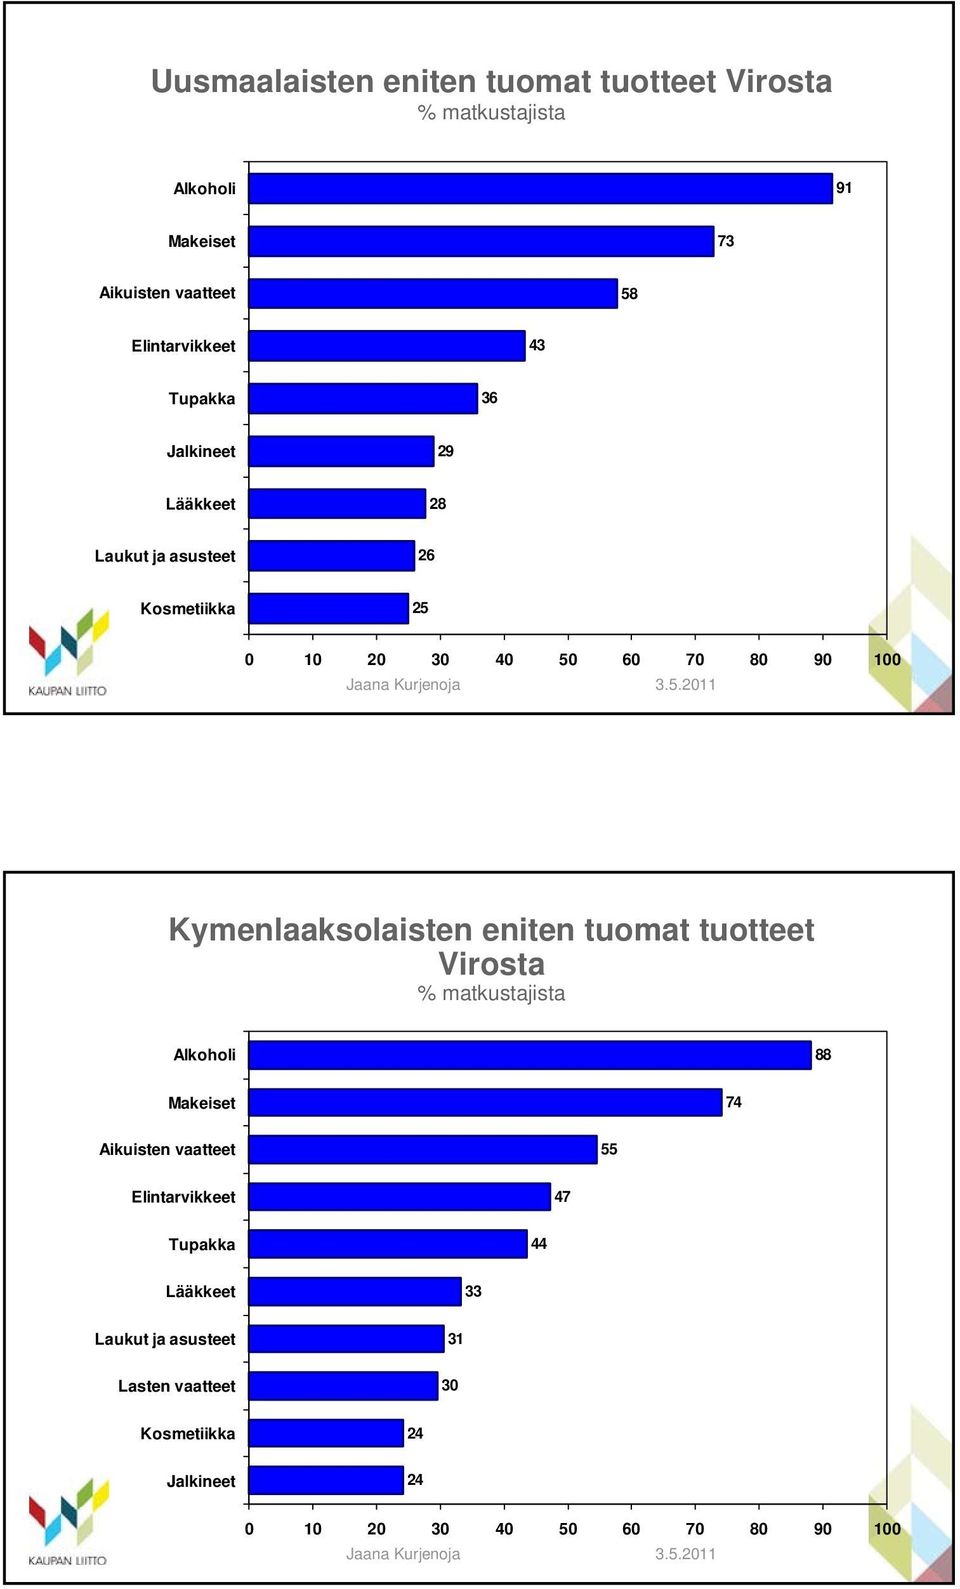 Kymenlaaksolaisten eniten tuomat tuotteet Virosta Alkoholi 88 Makeiset 74 Aikuisten vaatteet